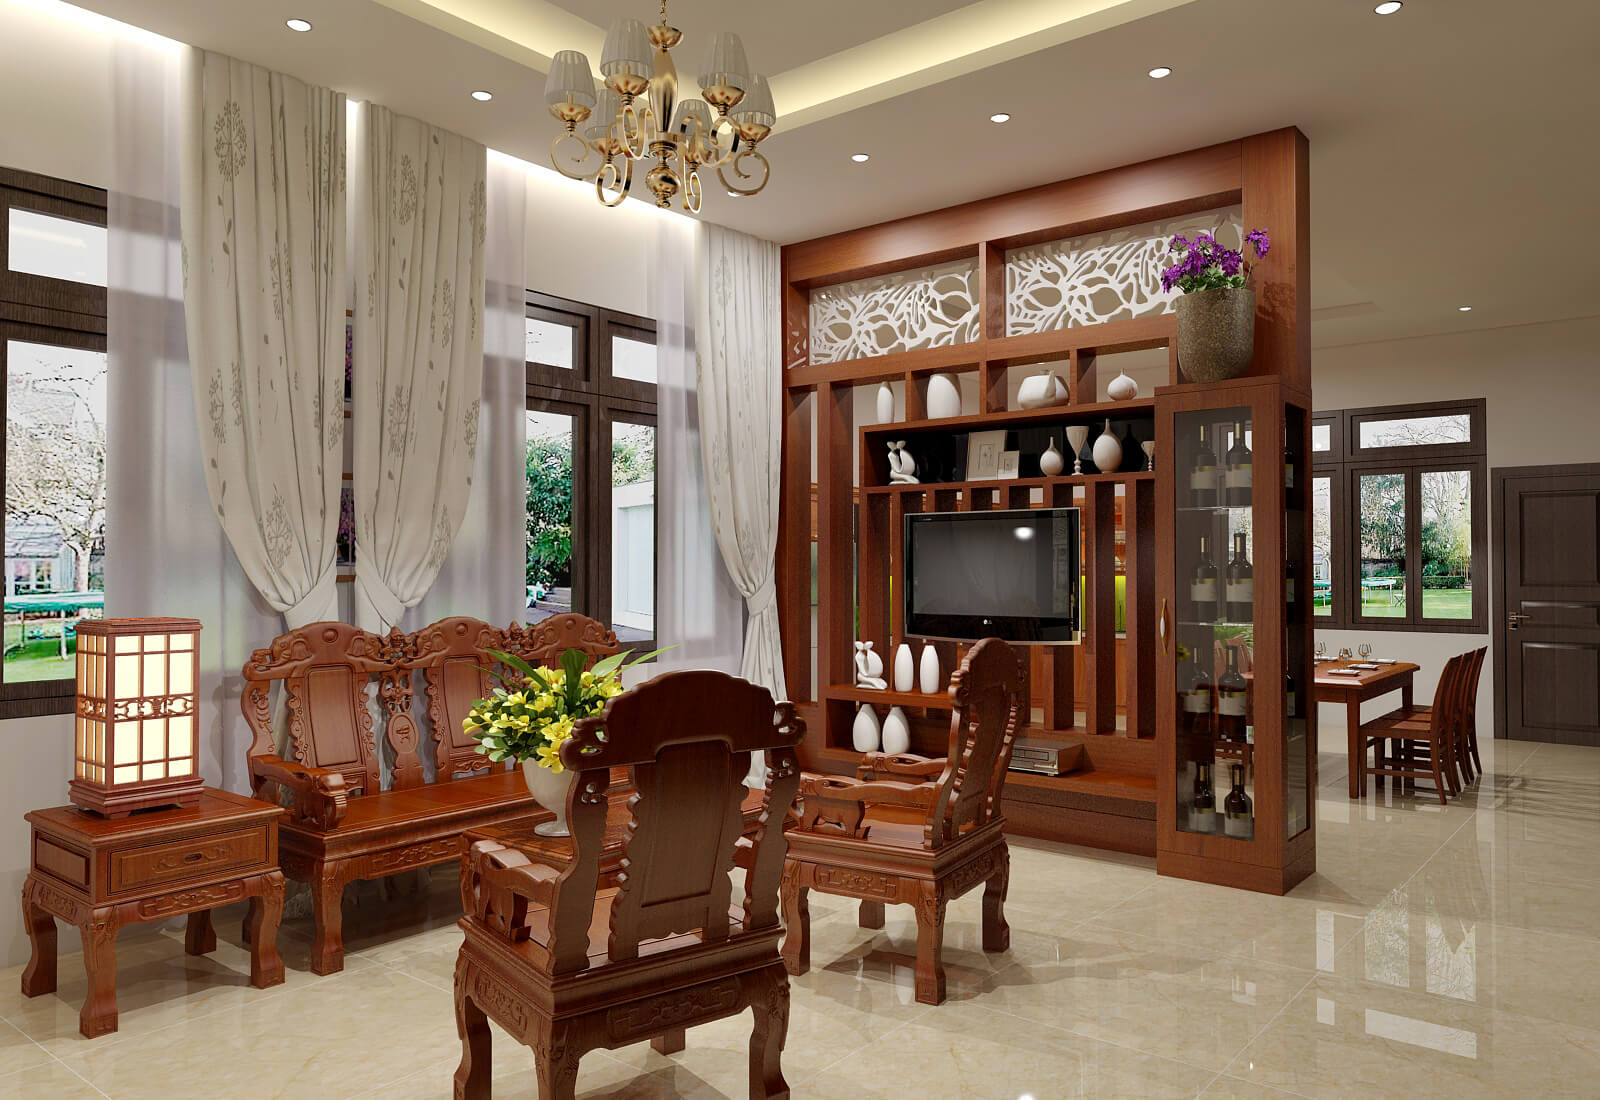 Top 5 mẫu nhà ống phòng khách liền bếp đẹp hiện đại nhất hiện nay  Trần  Anh Group